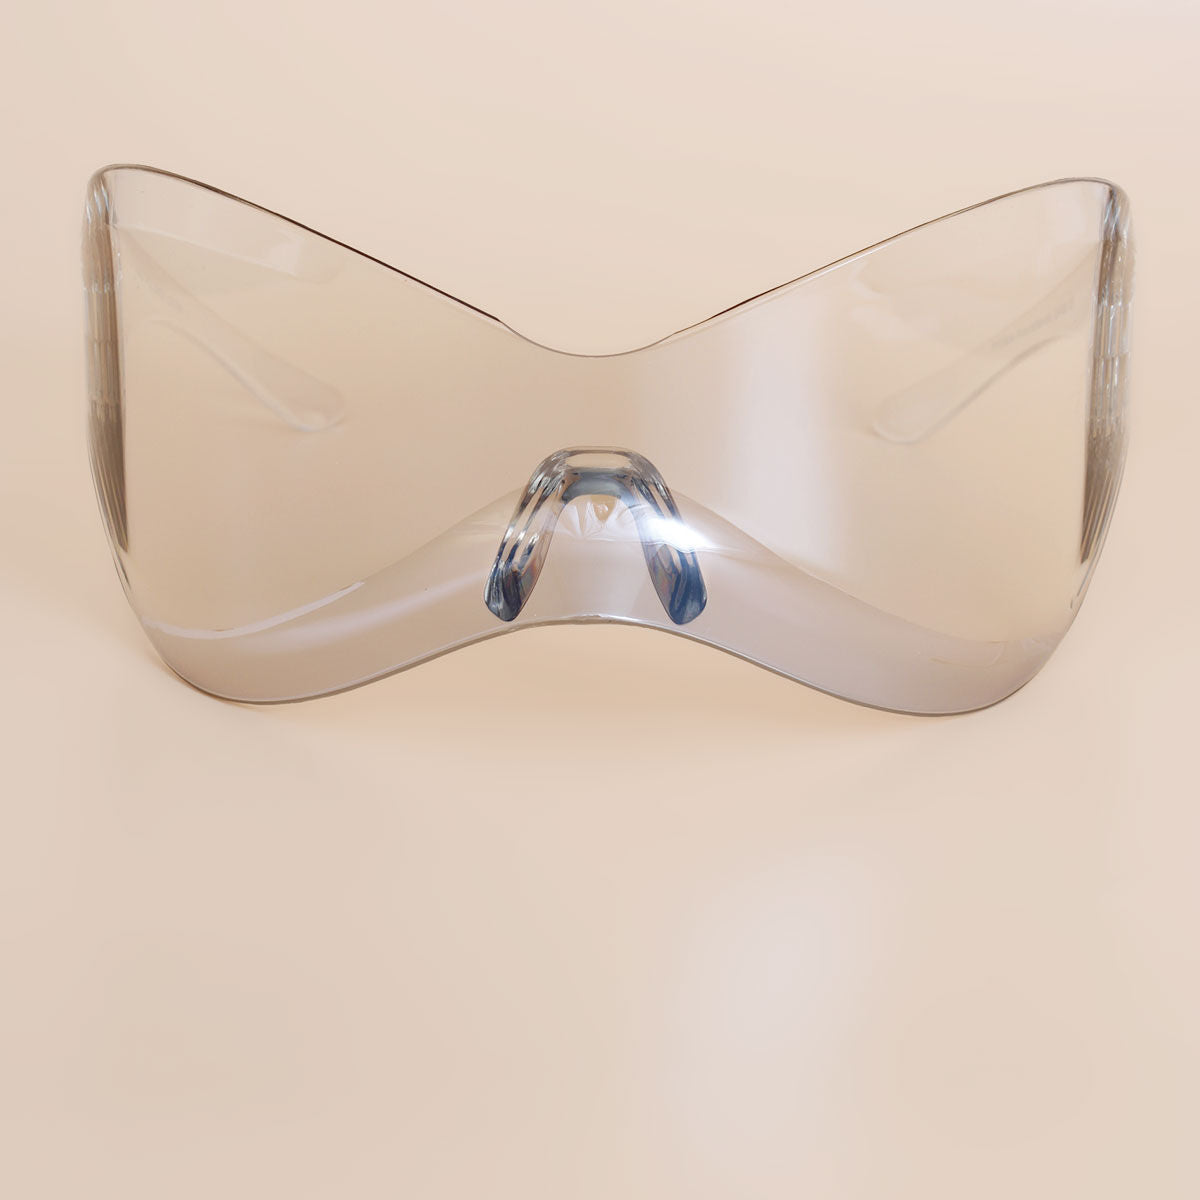 Sunglasses Mask Wrap Clear Eyewear for Women